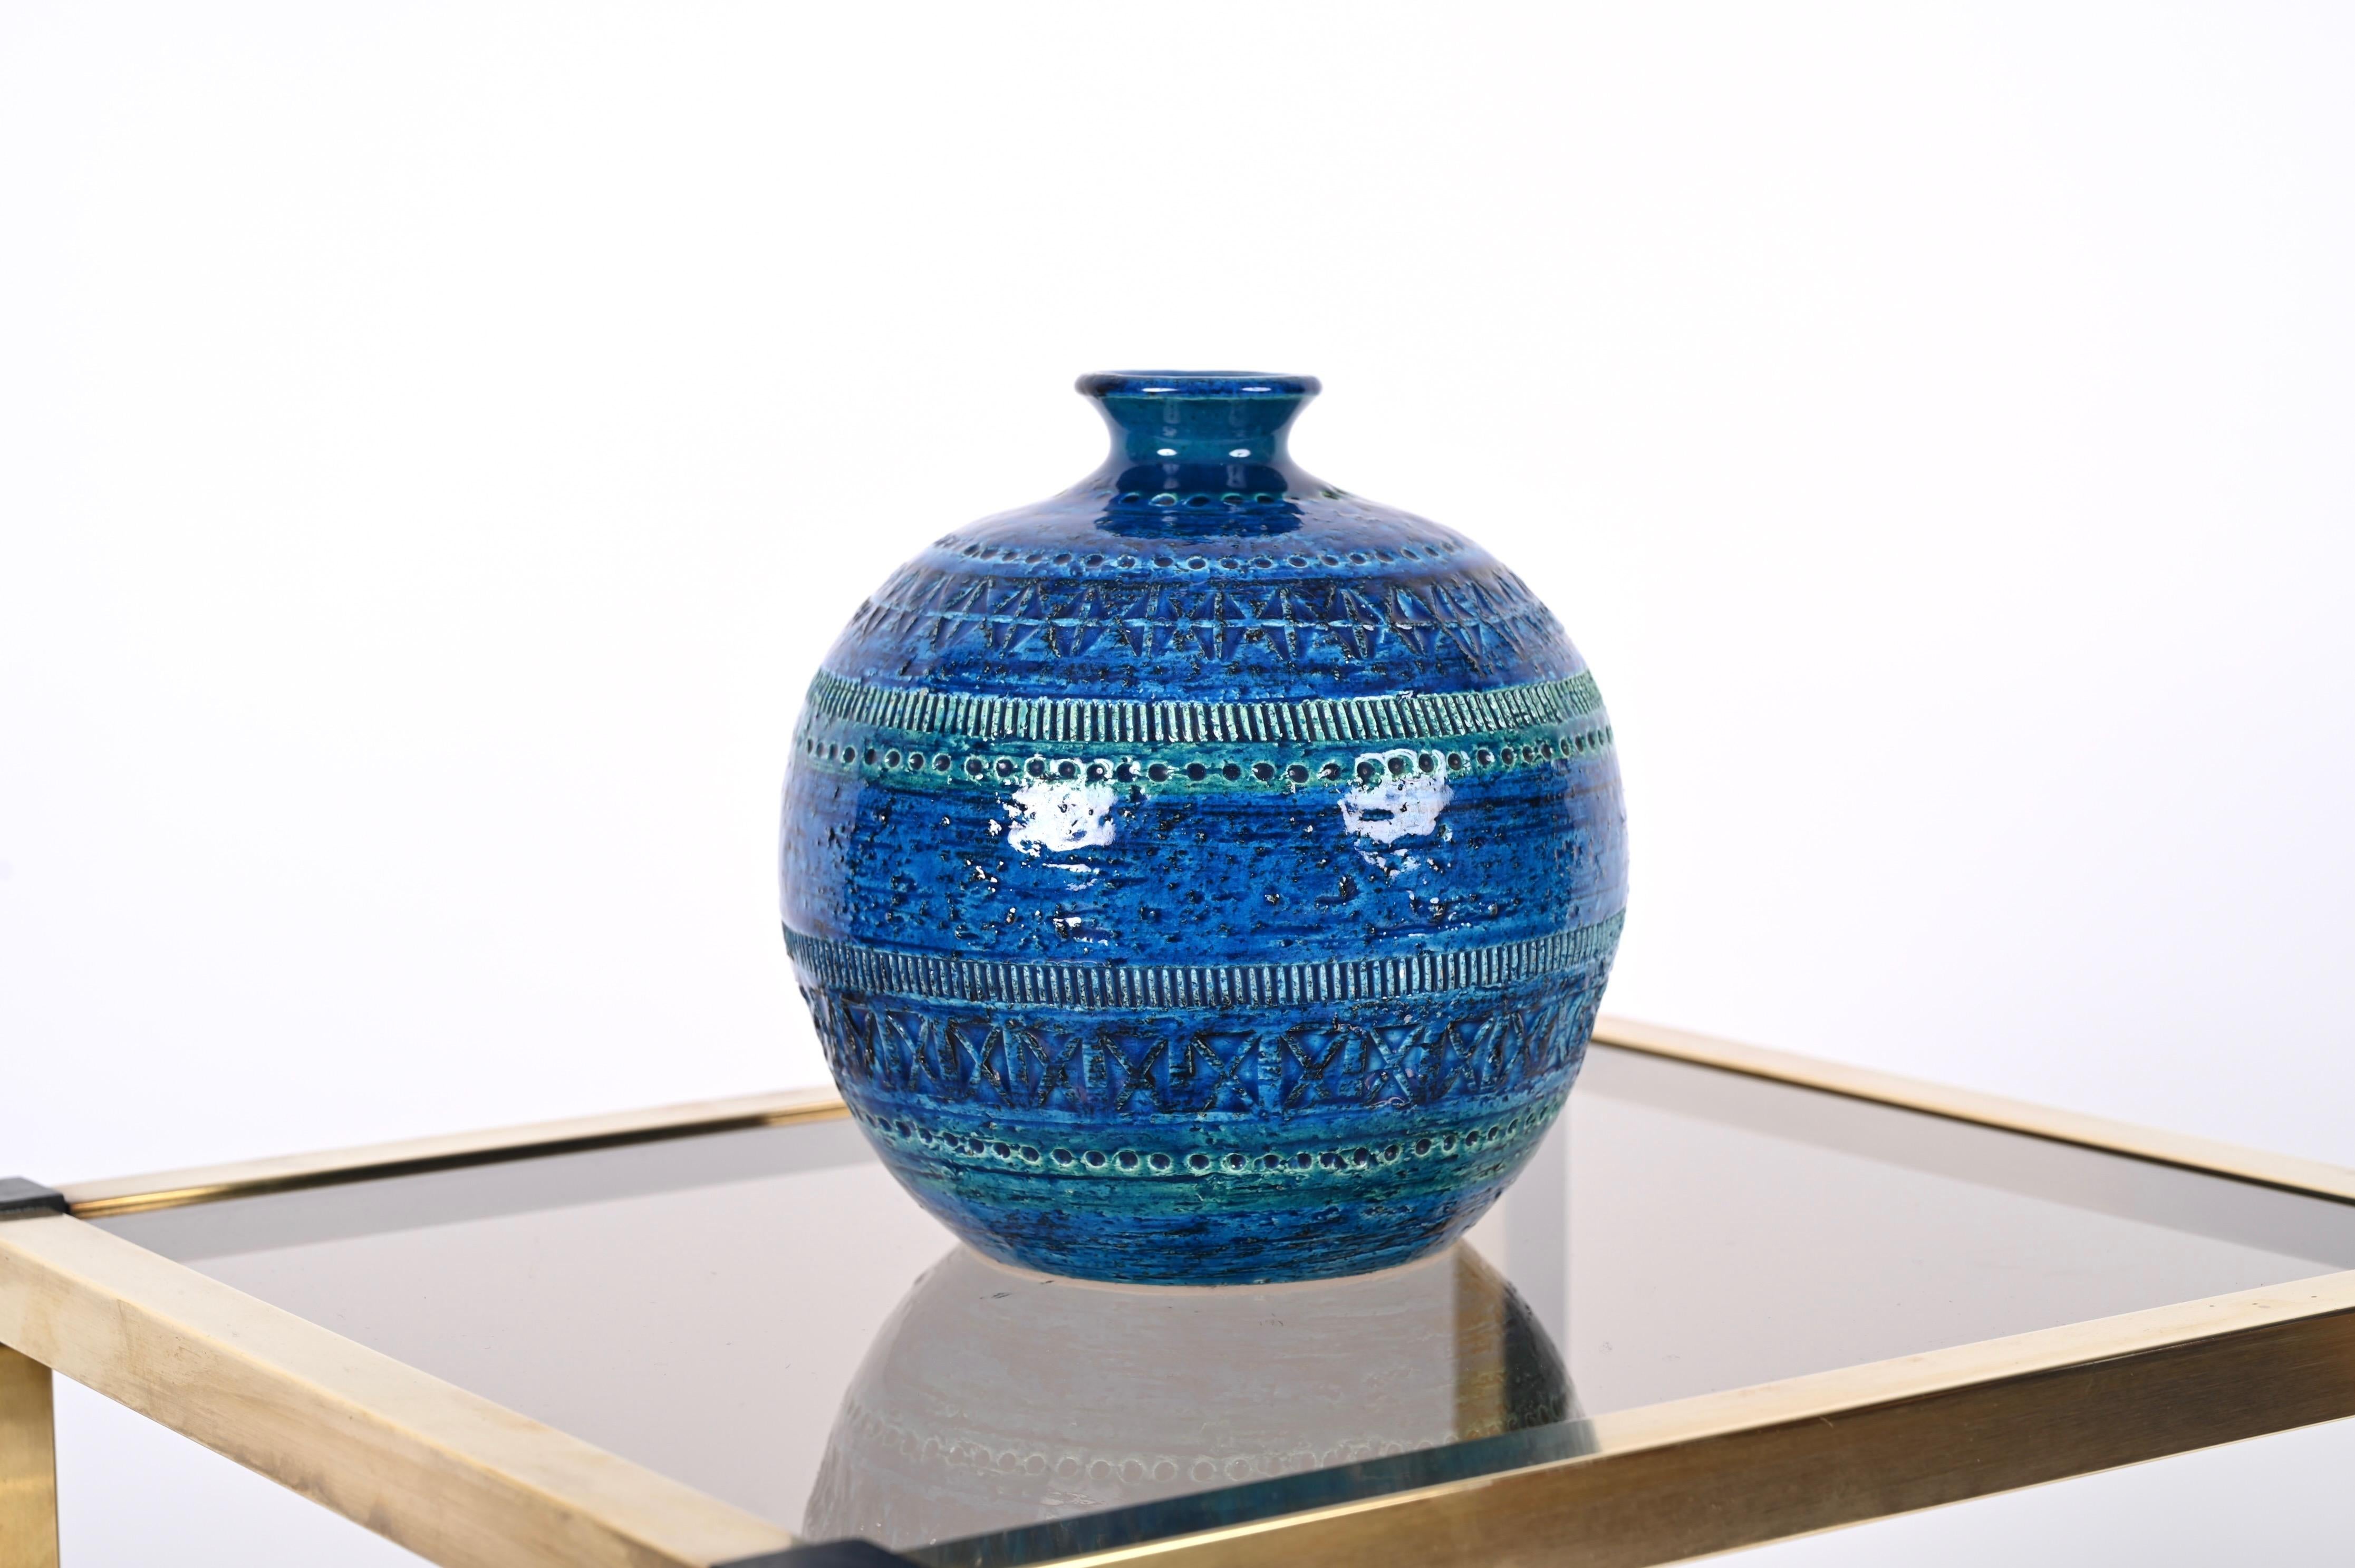 Aldo Londi Terracotta Ceramic Rimini Blue Vase for Bitossi, Italy, 1960s For Sale 2